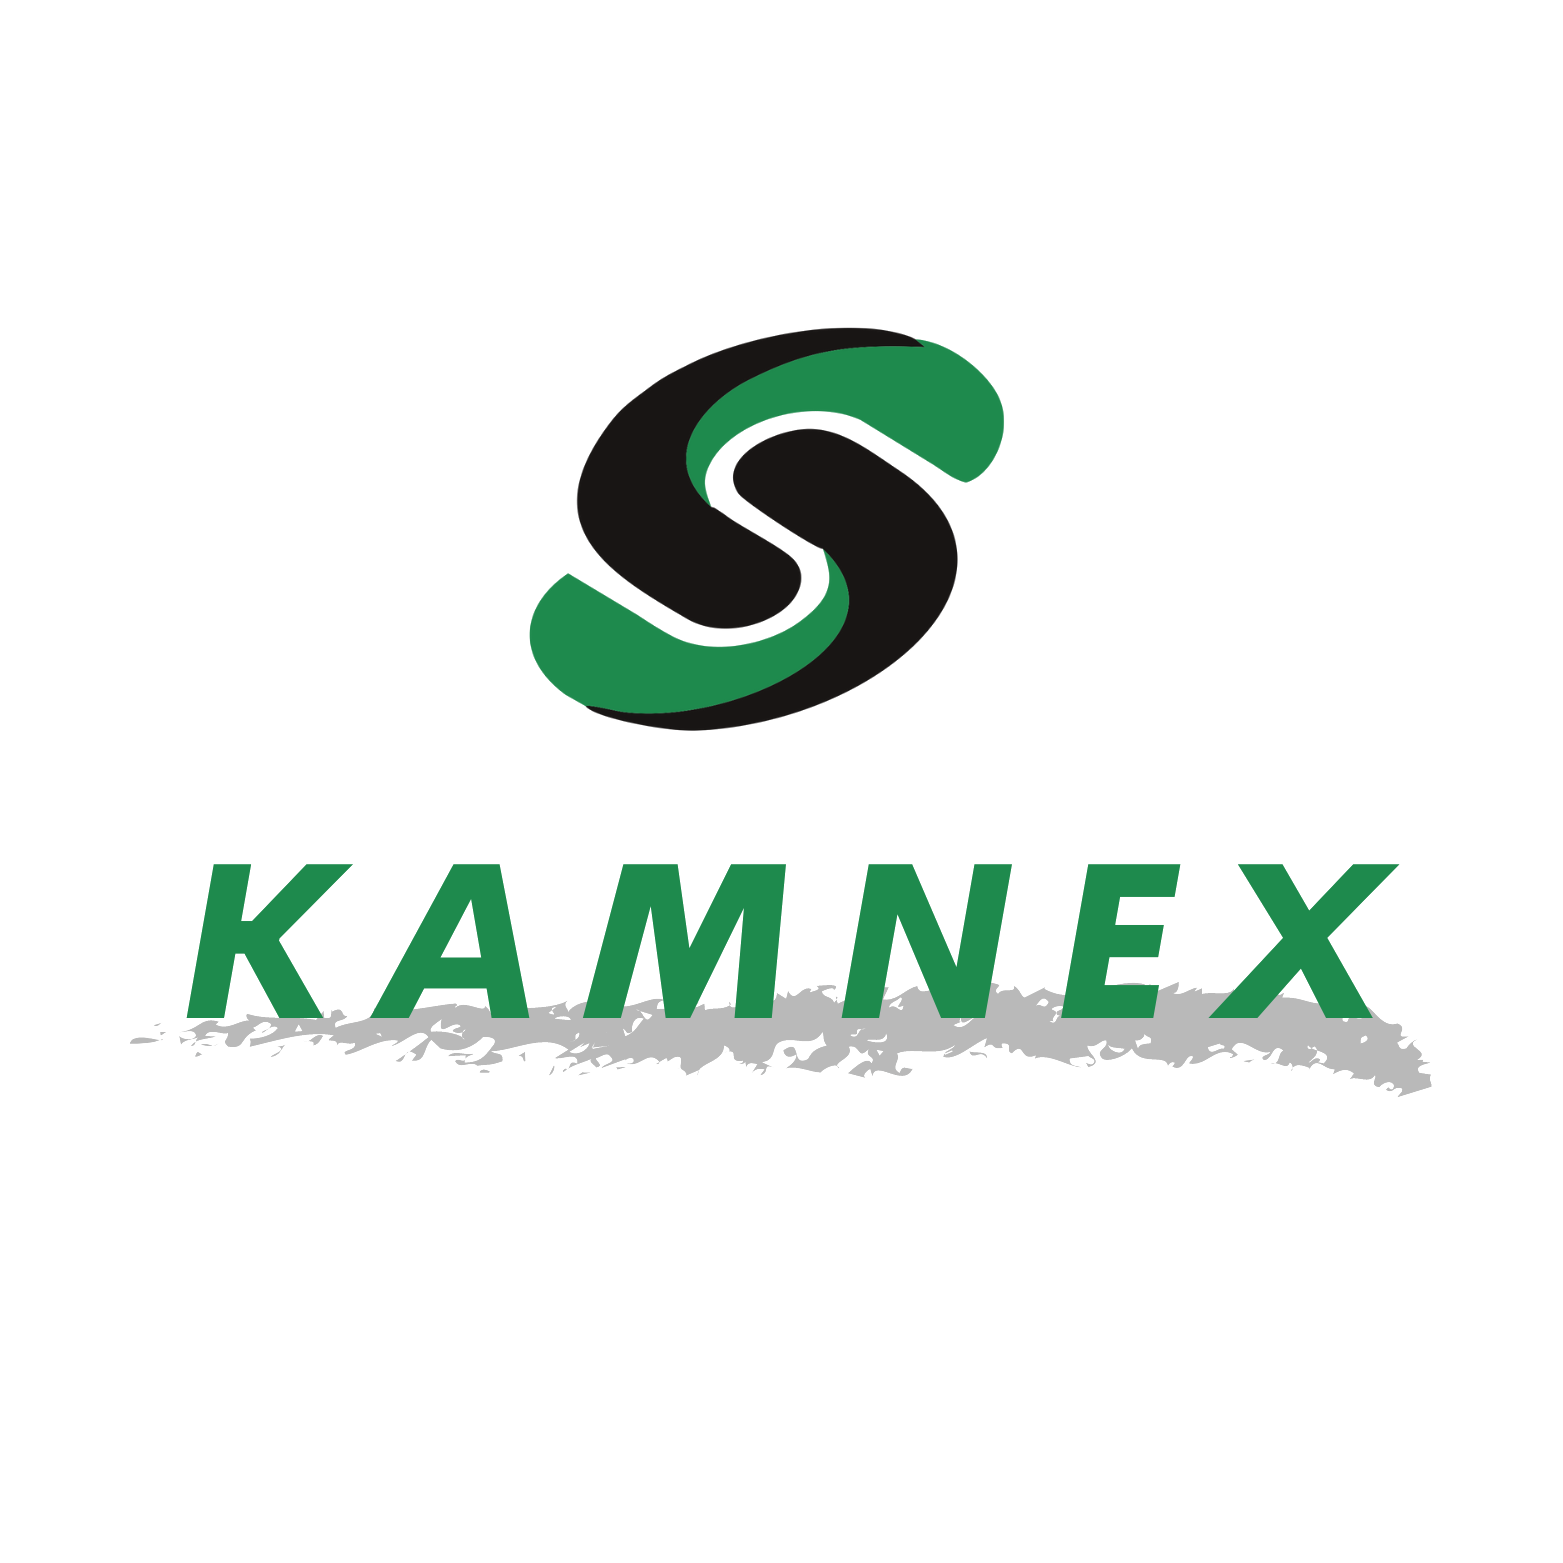 KAMNEX